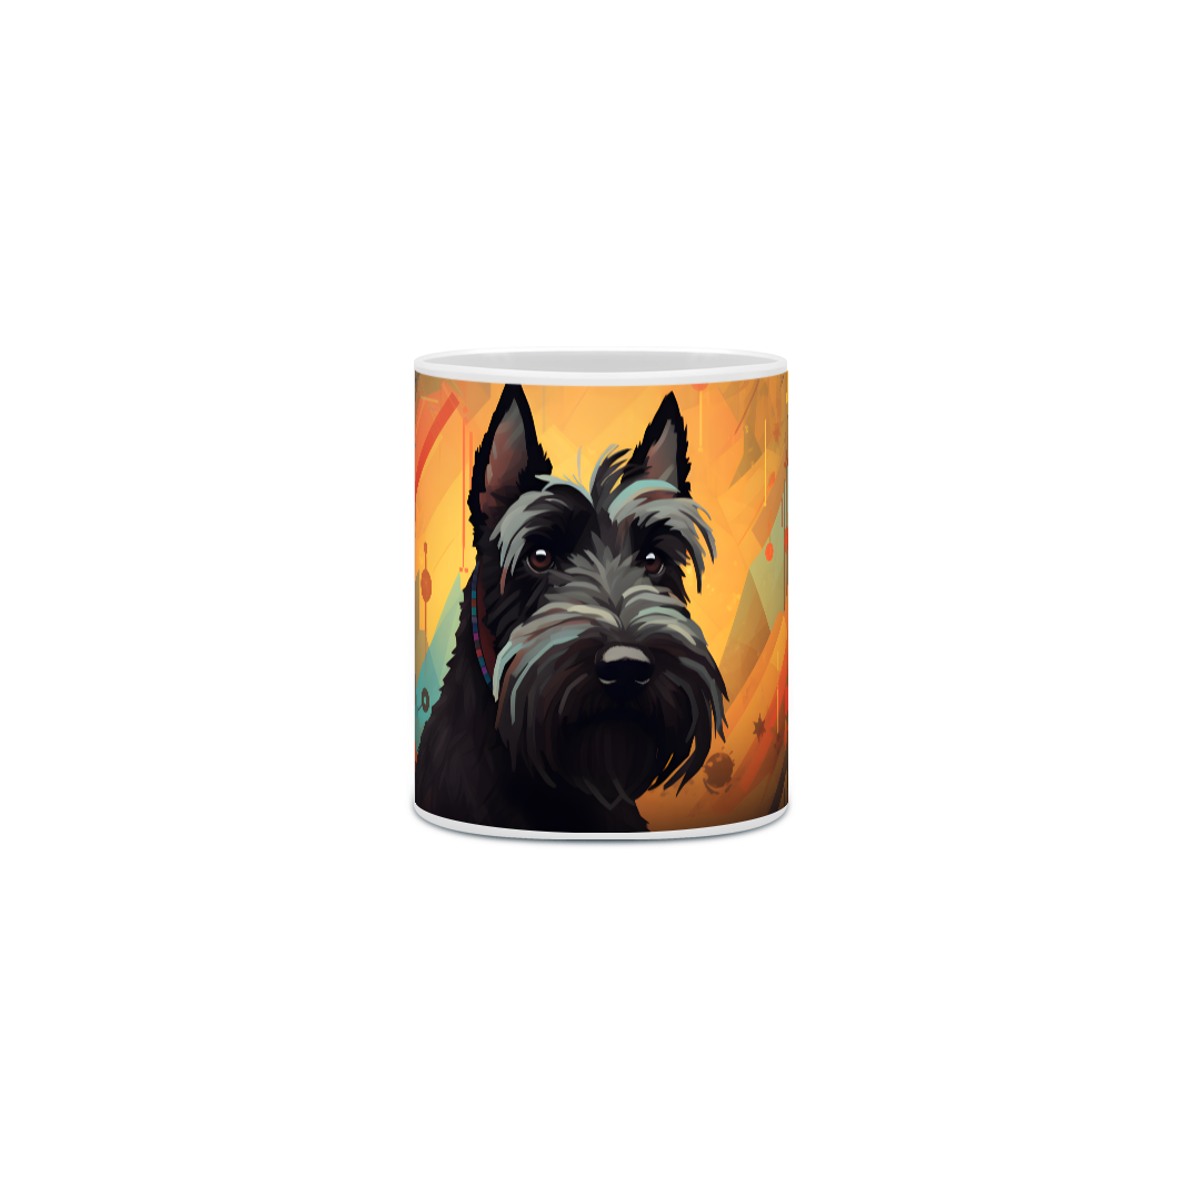 Nome do produto: Caneca Scottish Terrier com Arte Digital - #Autenticidade 0014